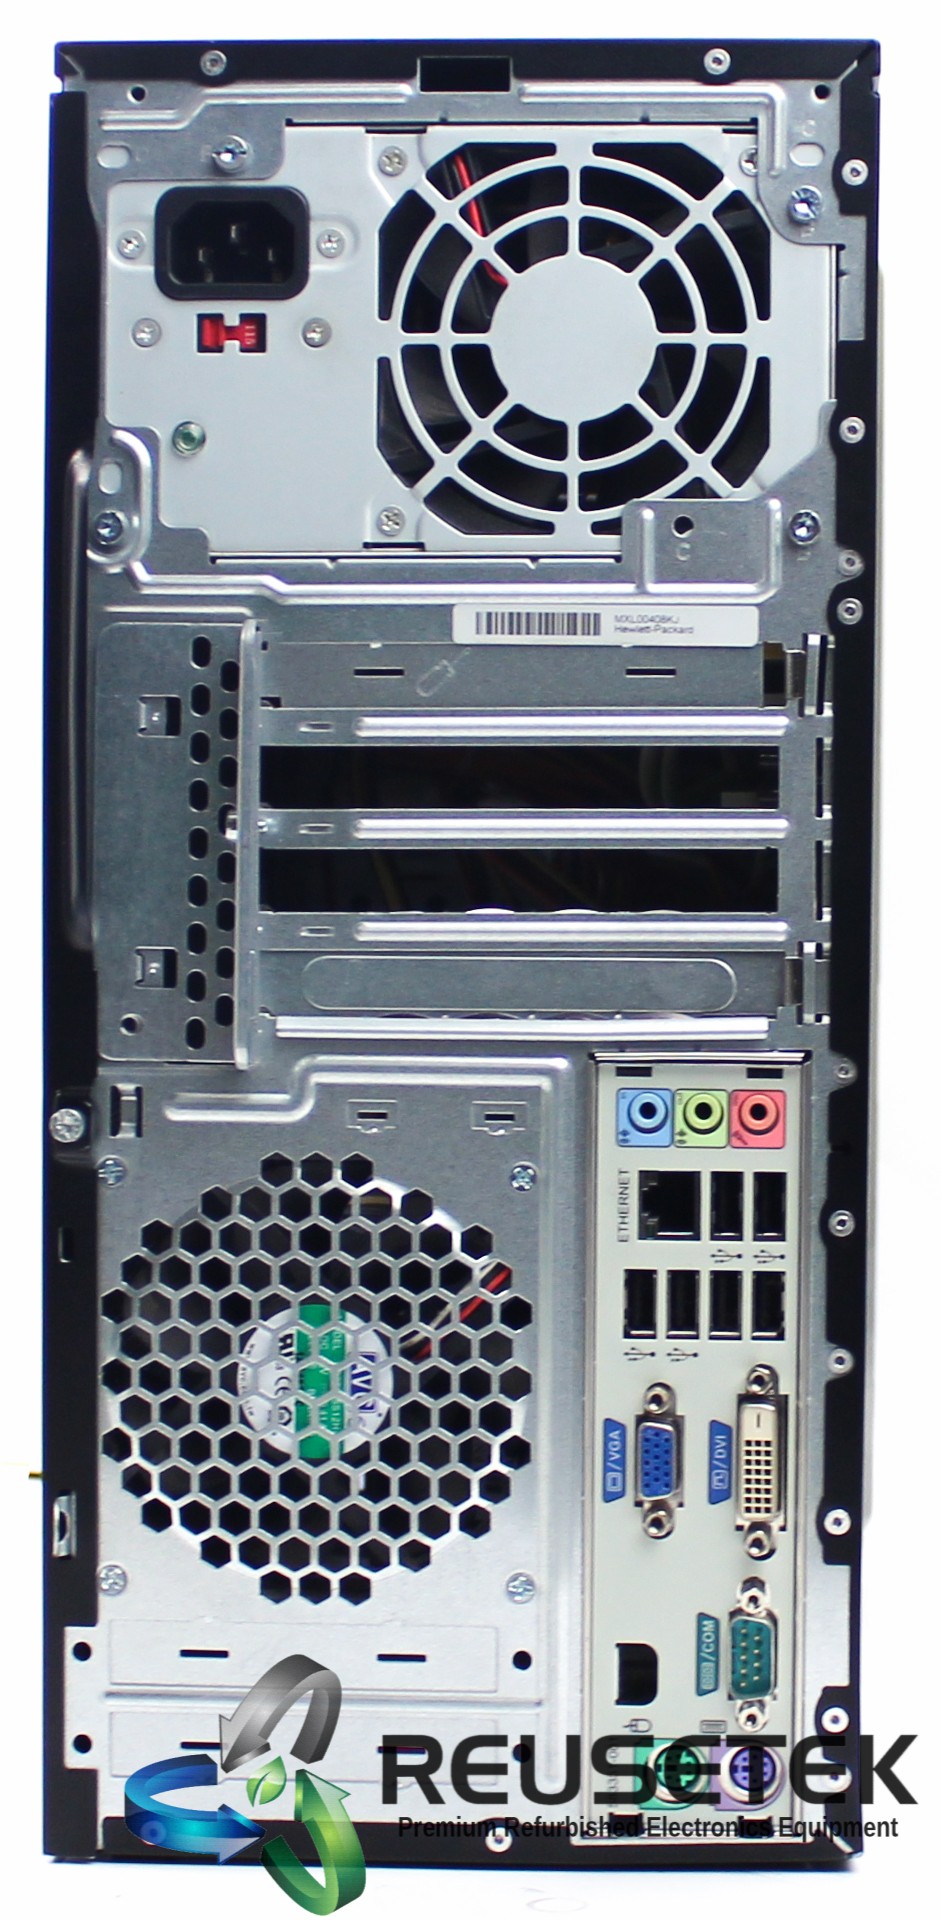 GC5067-HP Pro 3005 MT Desktop PC-image